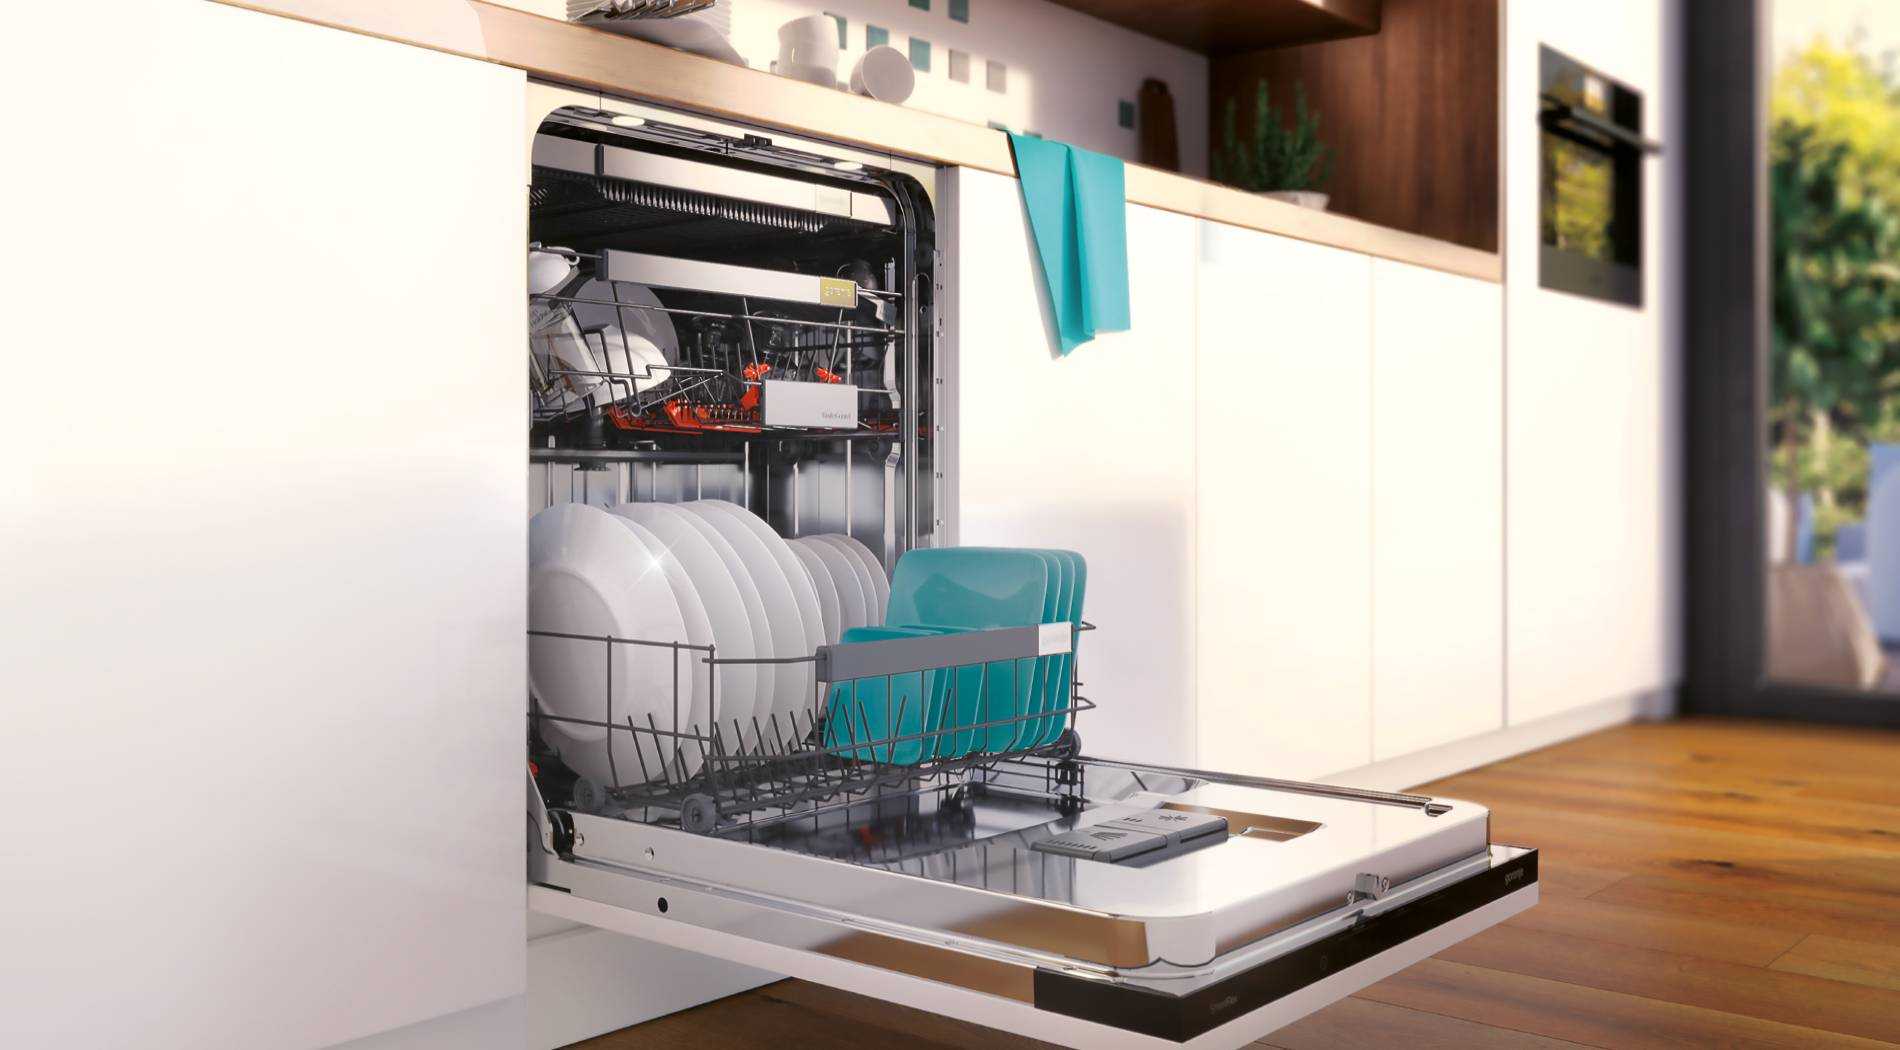 20 лучших встраиваемых посудомоечных машин - рейтинг 2020